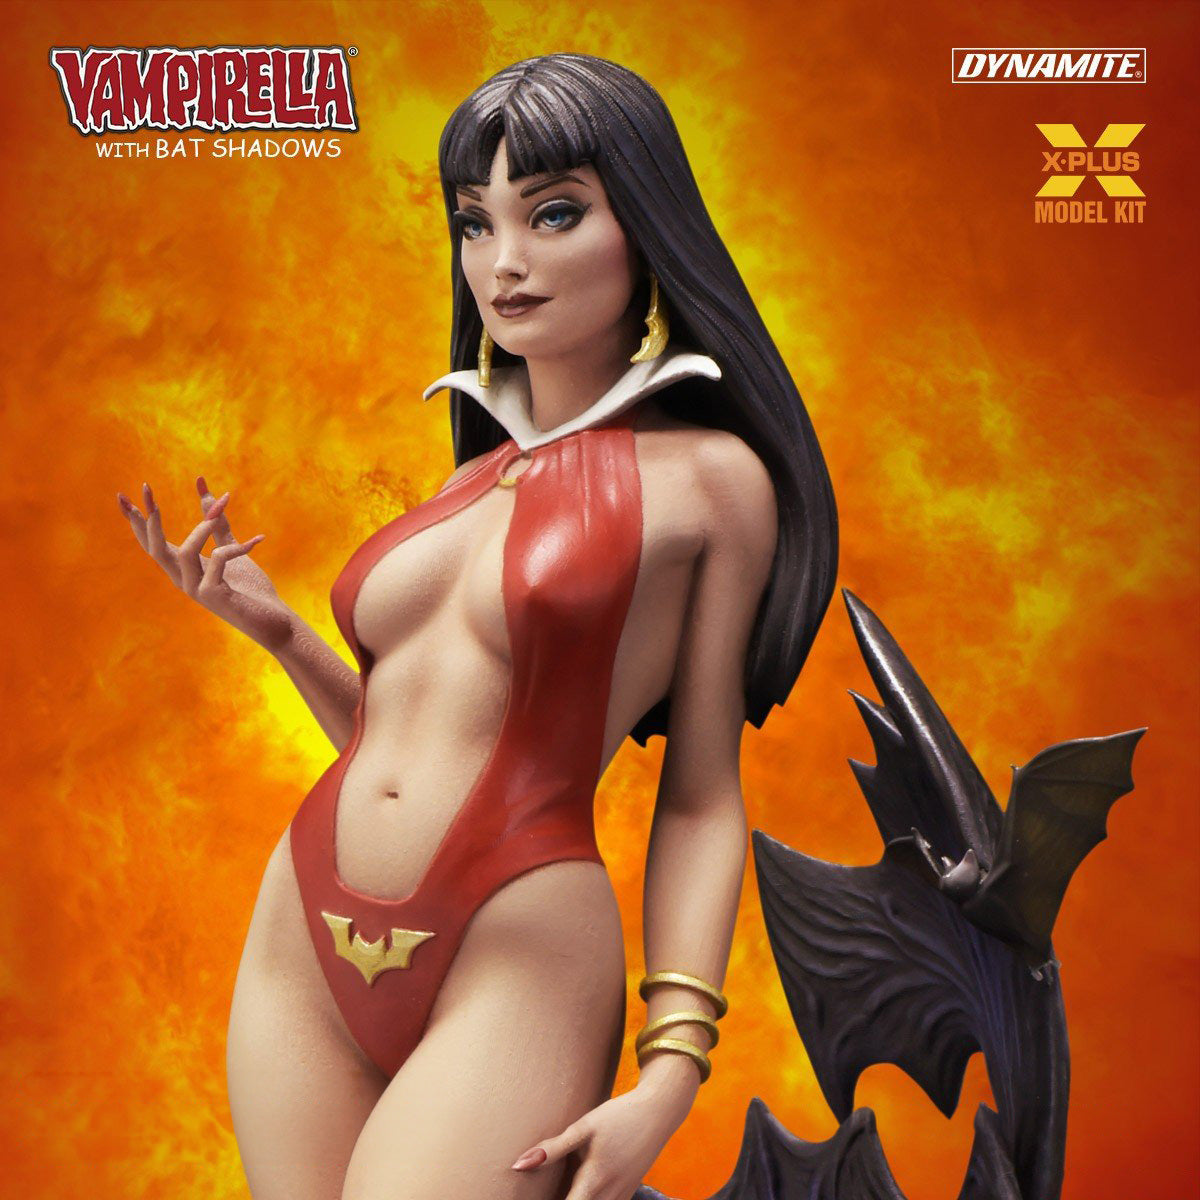 X-Plus - Dynamite - Vampirella with Bat Shadows Model Kit (1/8 Scale) (Reissue) - Marvelous Toys